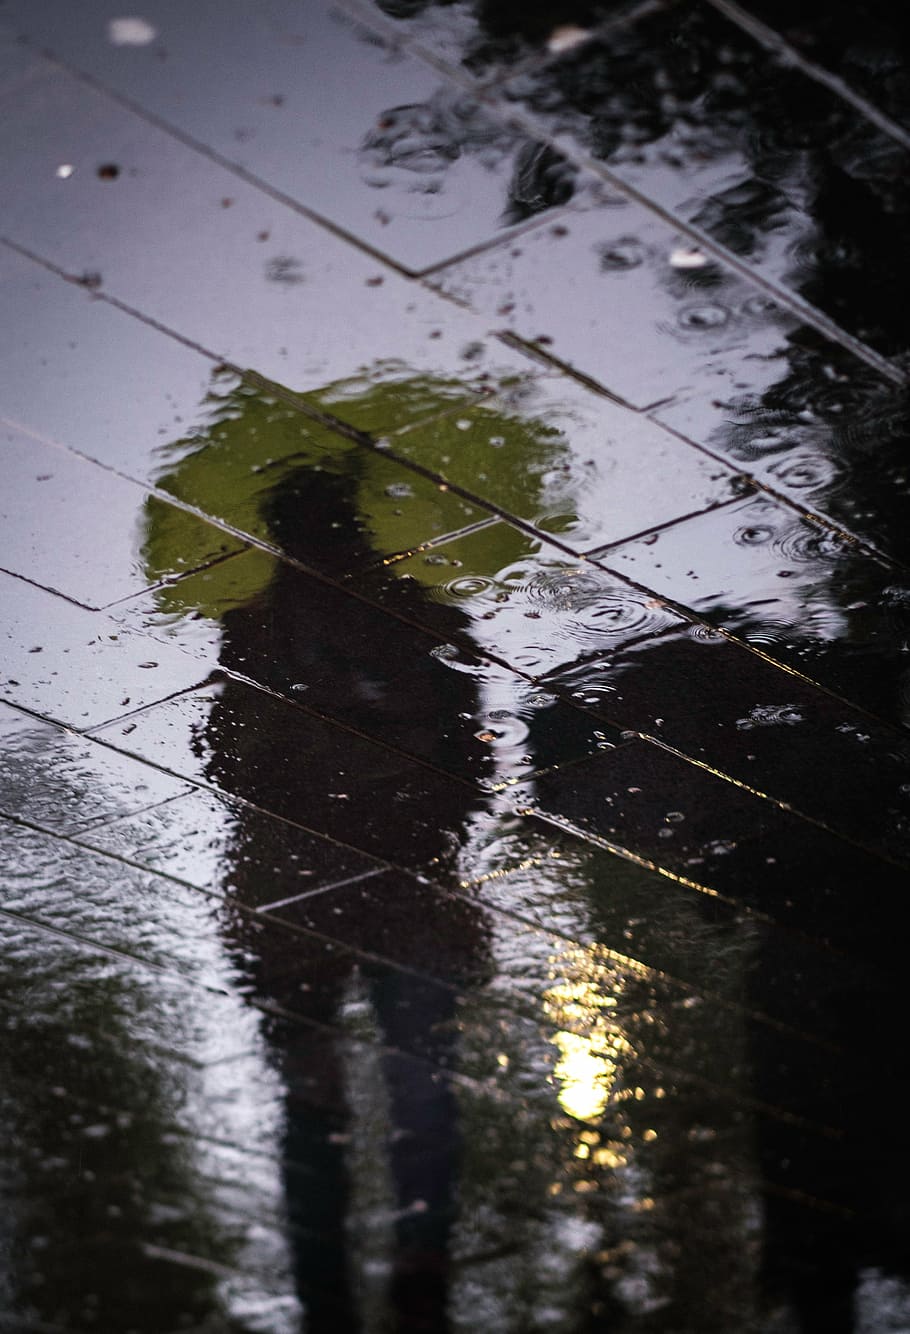 sombra, pessoa, exploração, guarda chuva, estrada, rua, molhado, agua, chuva, pessoas